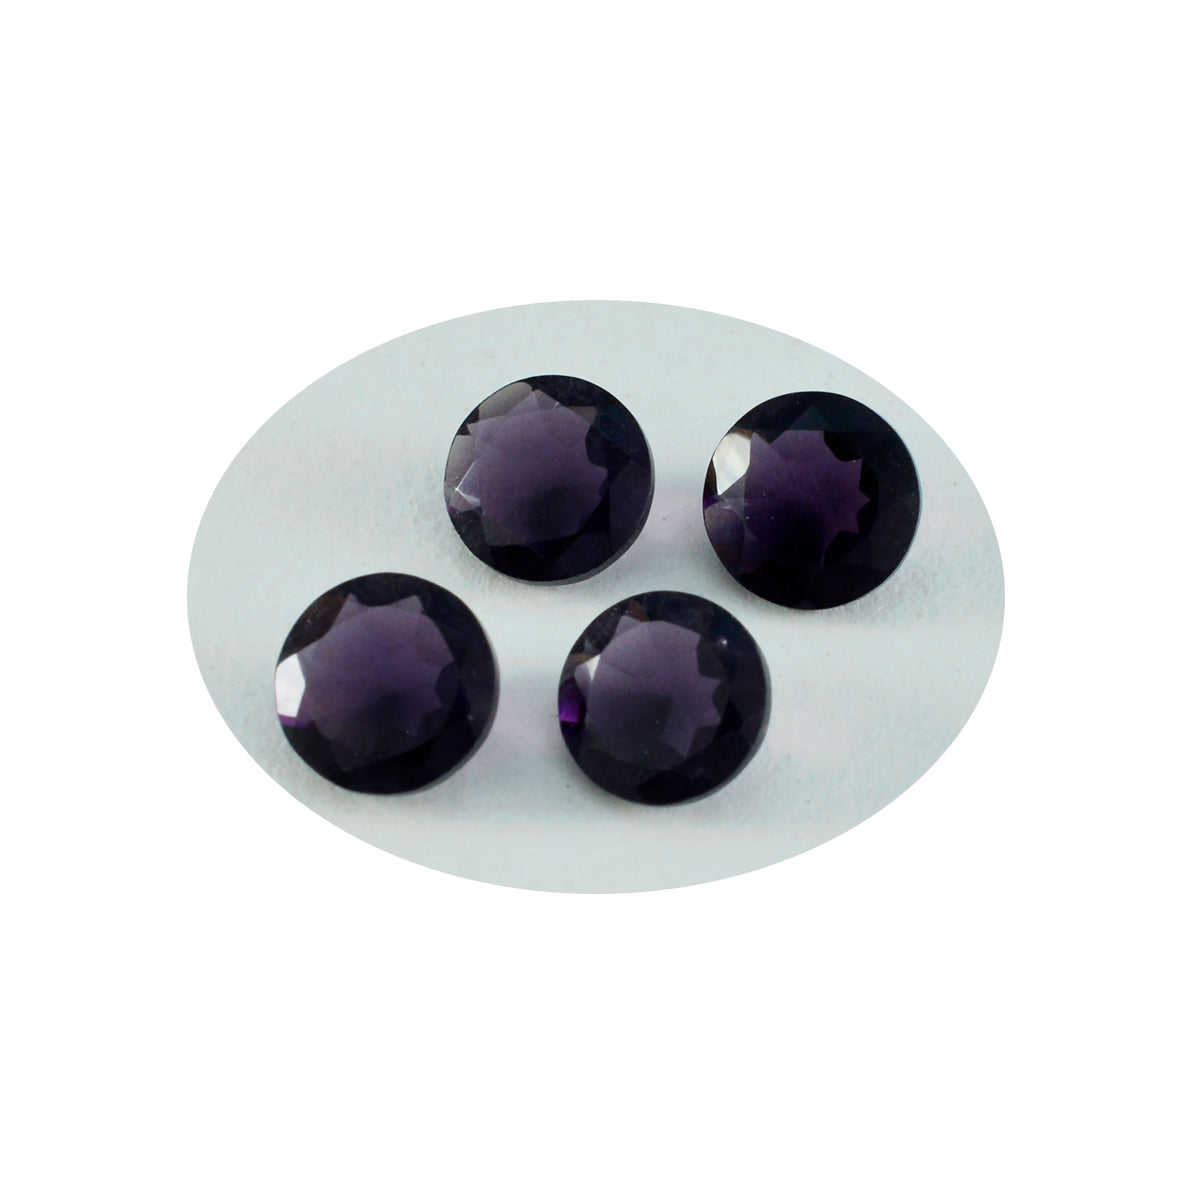 riyogems 1 шт. фиолетовый аметист cz ограненный 14x14 мм круглая форма красивый качественный свободный драгоценный камень